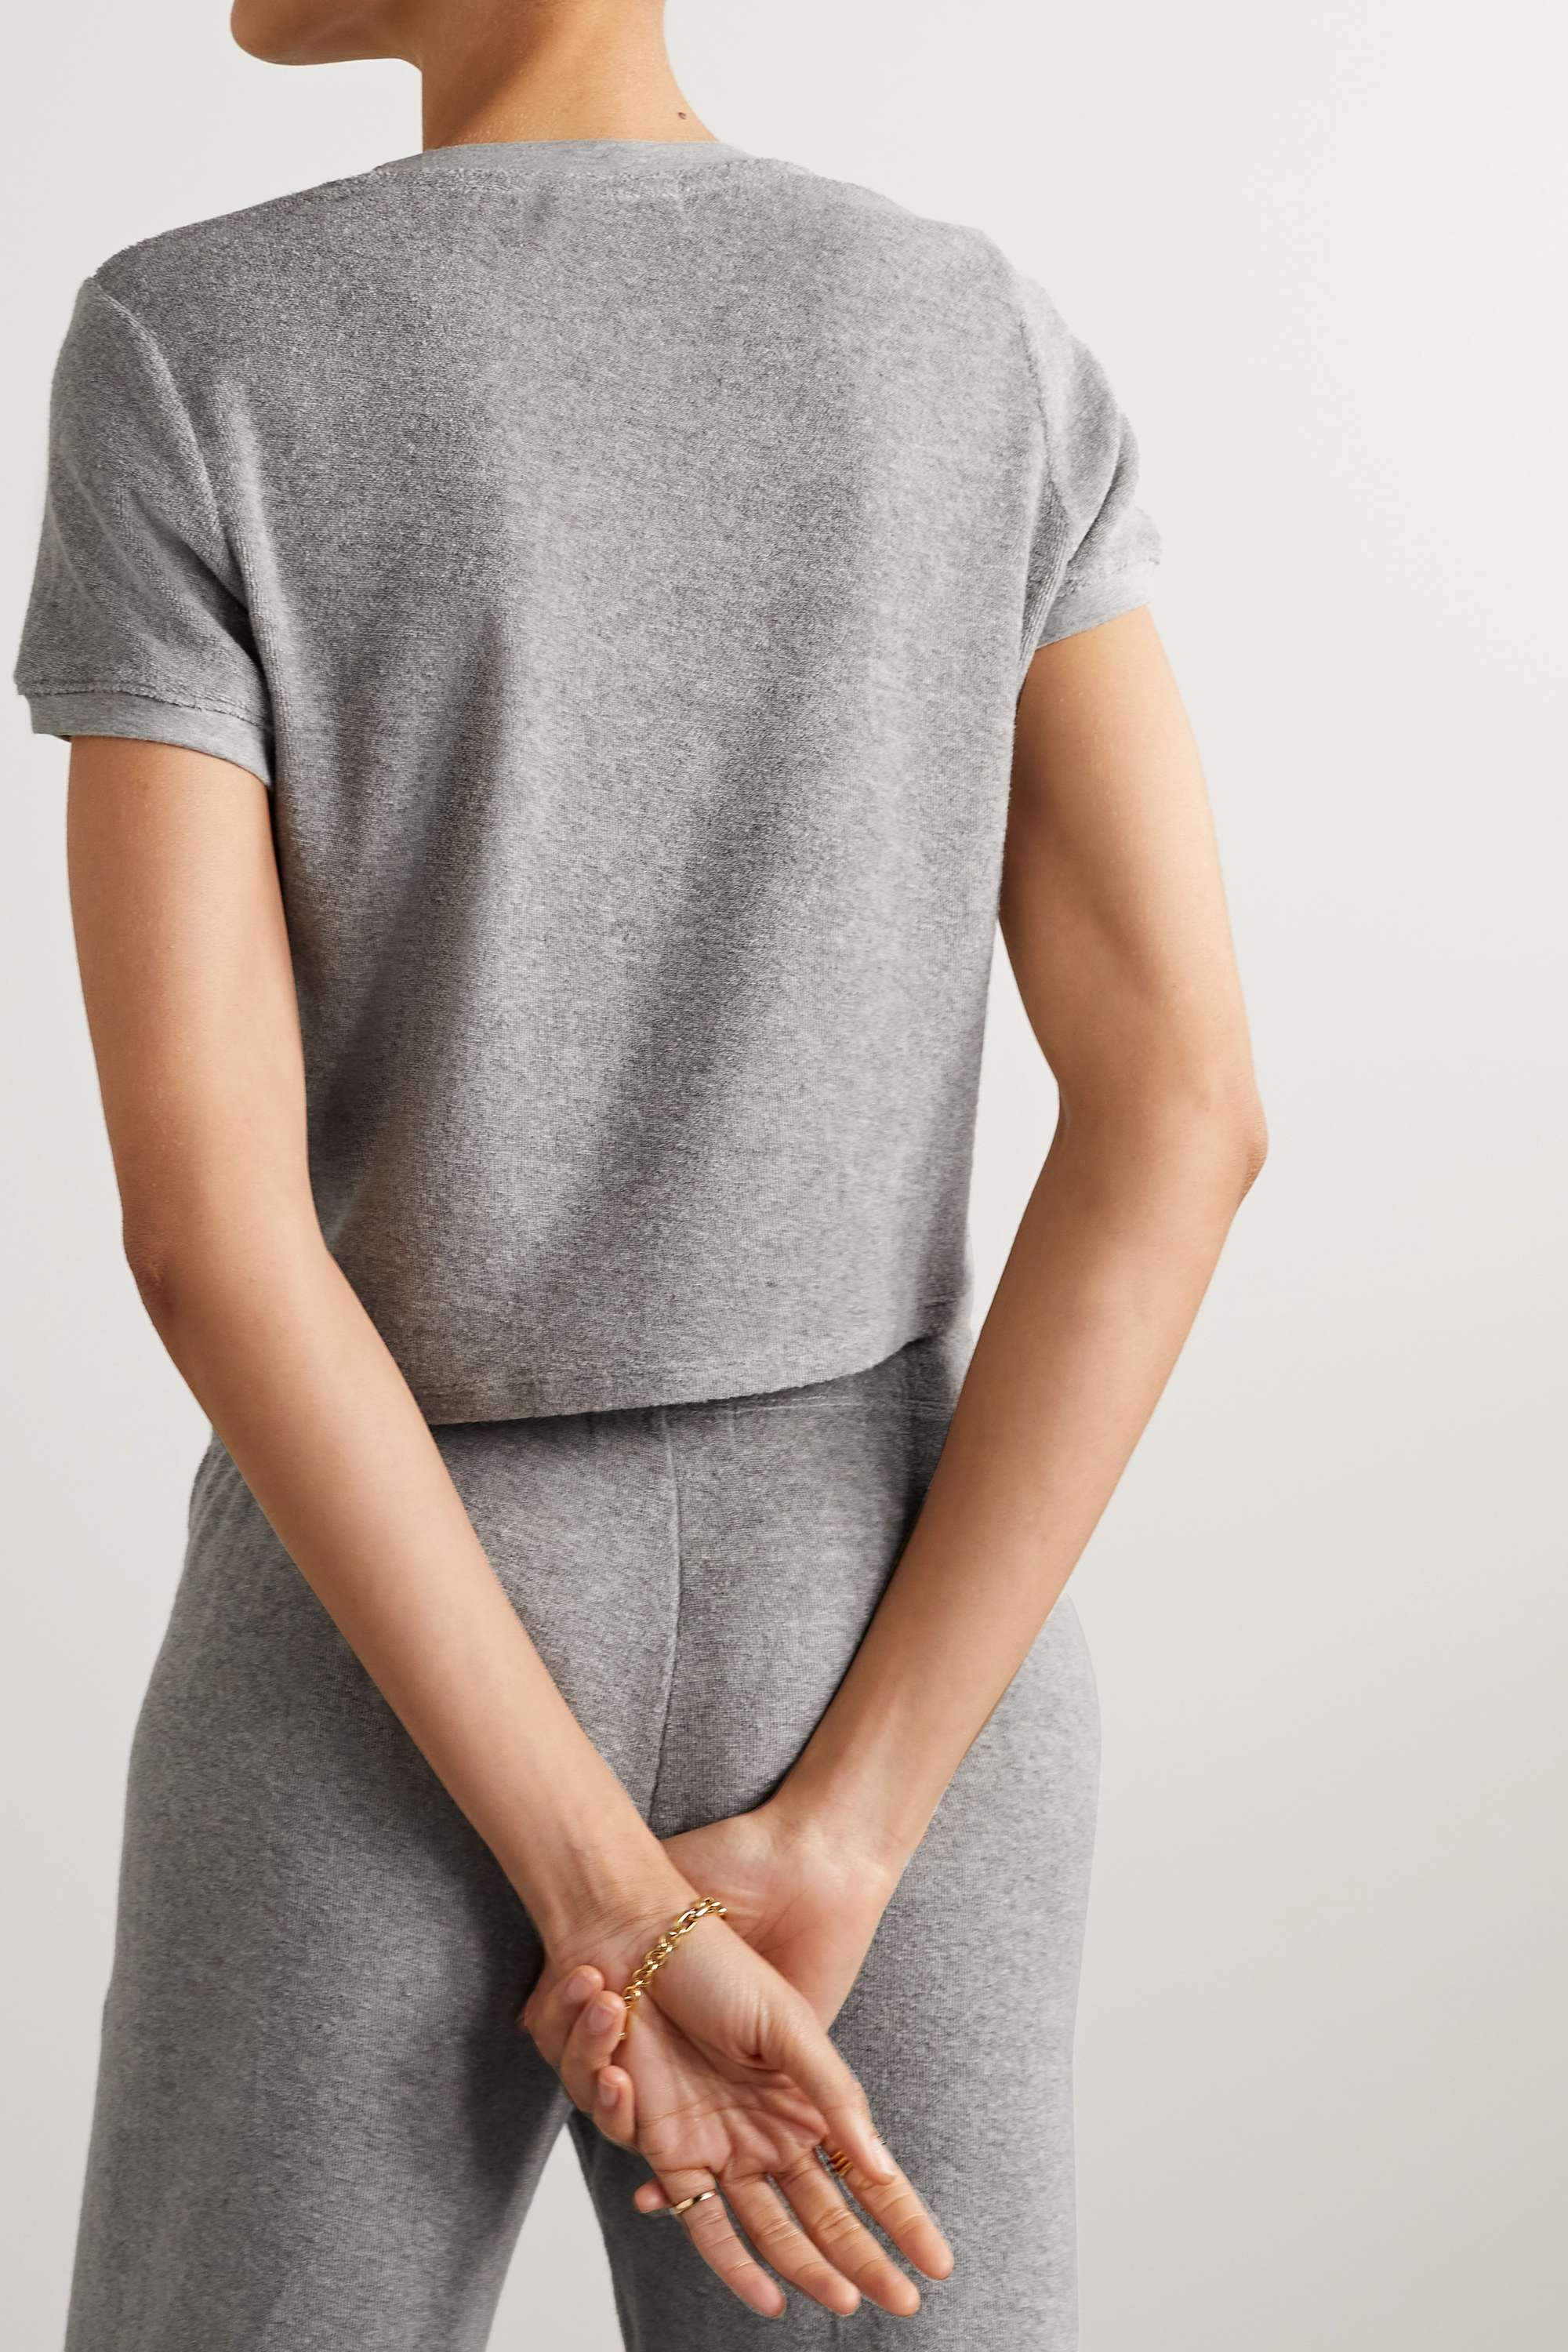 SUZIE KONDI Капри футболка из хлопковой махровой ткани, серый конди элли атлантия